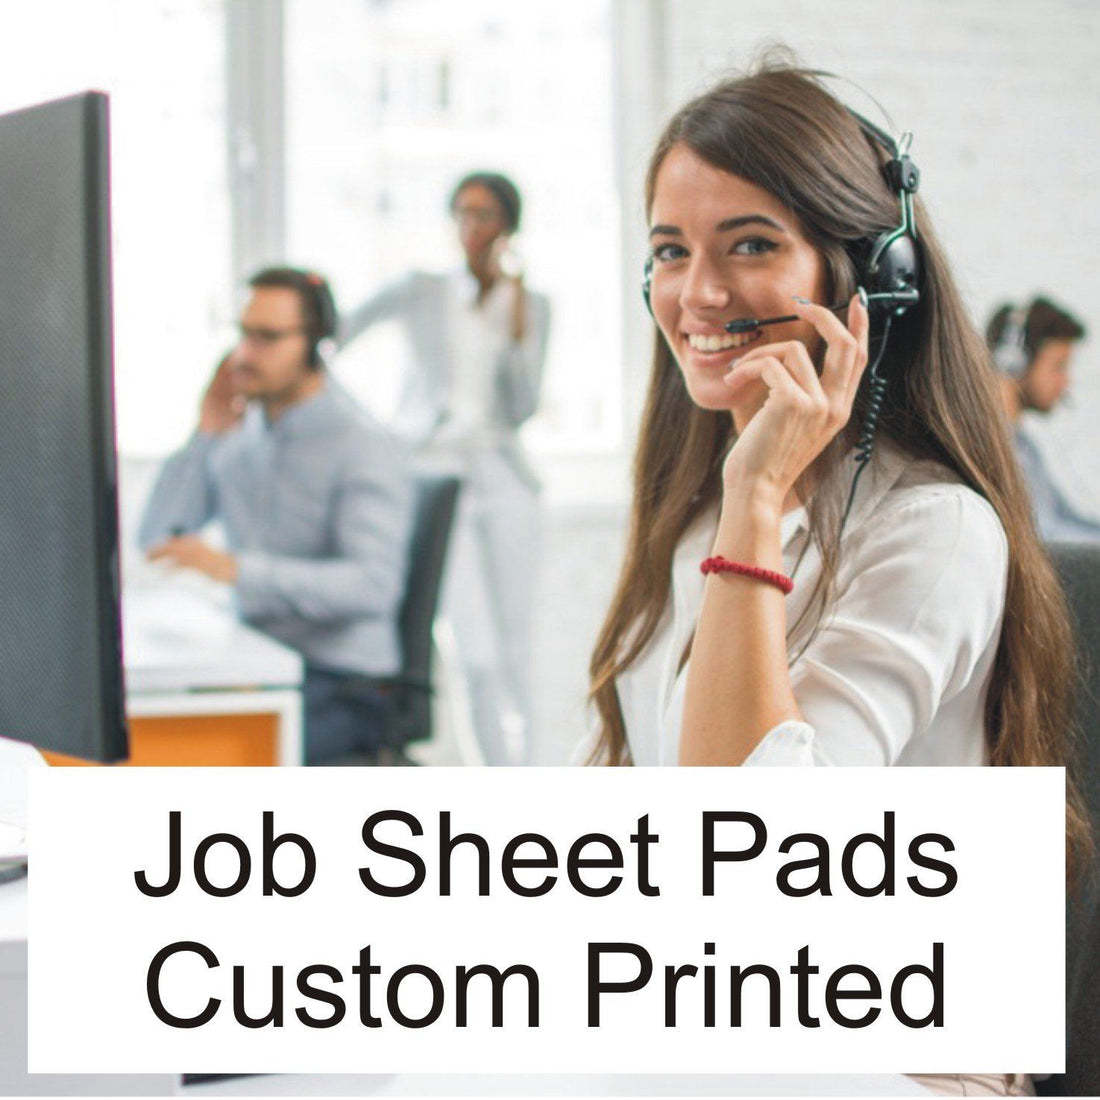 Do You Use Job Sheet Pads?